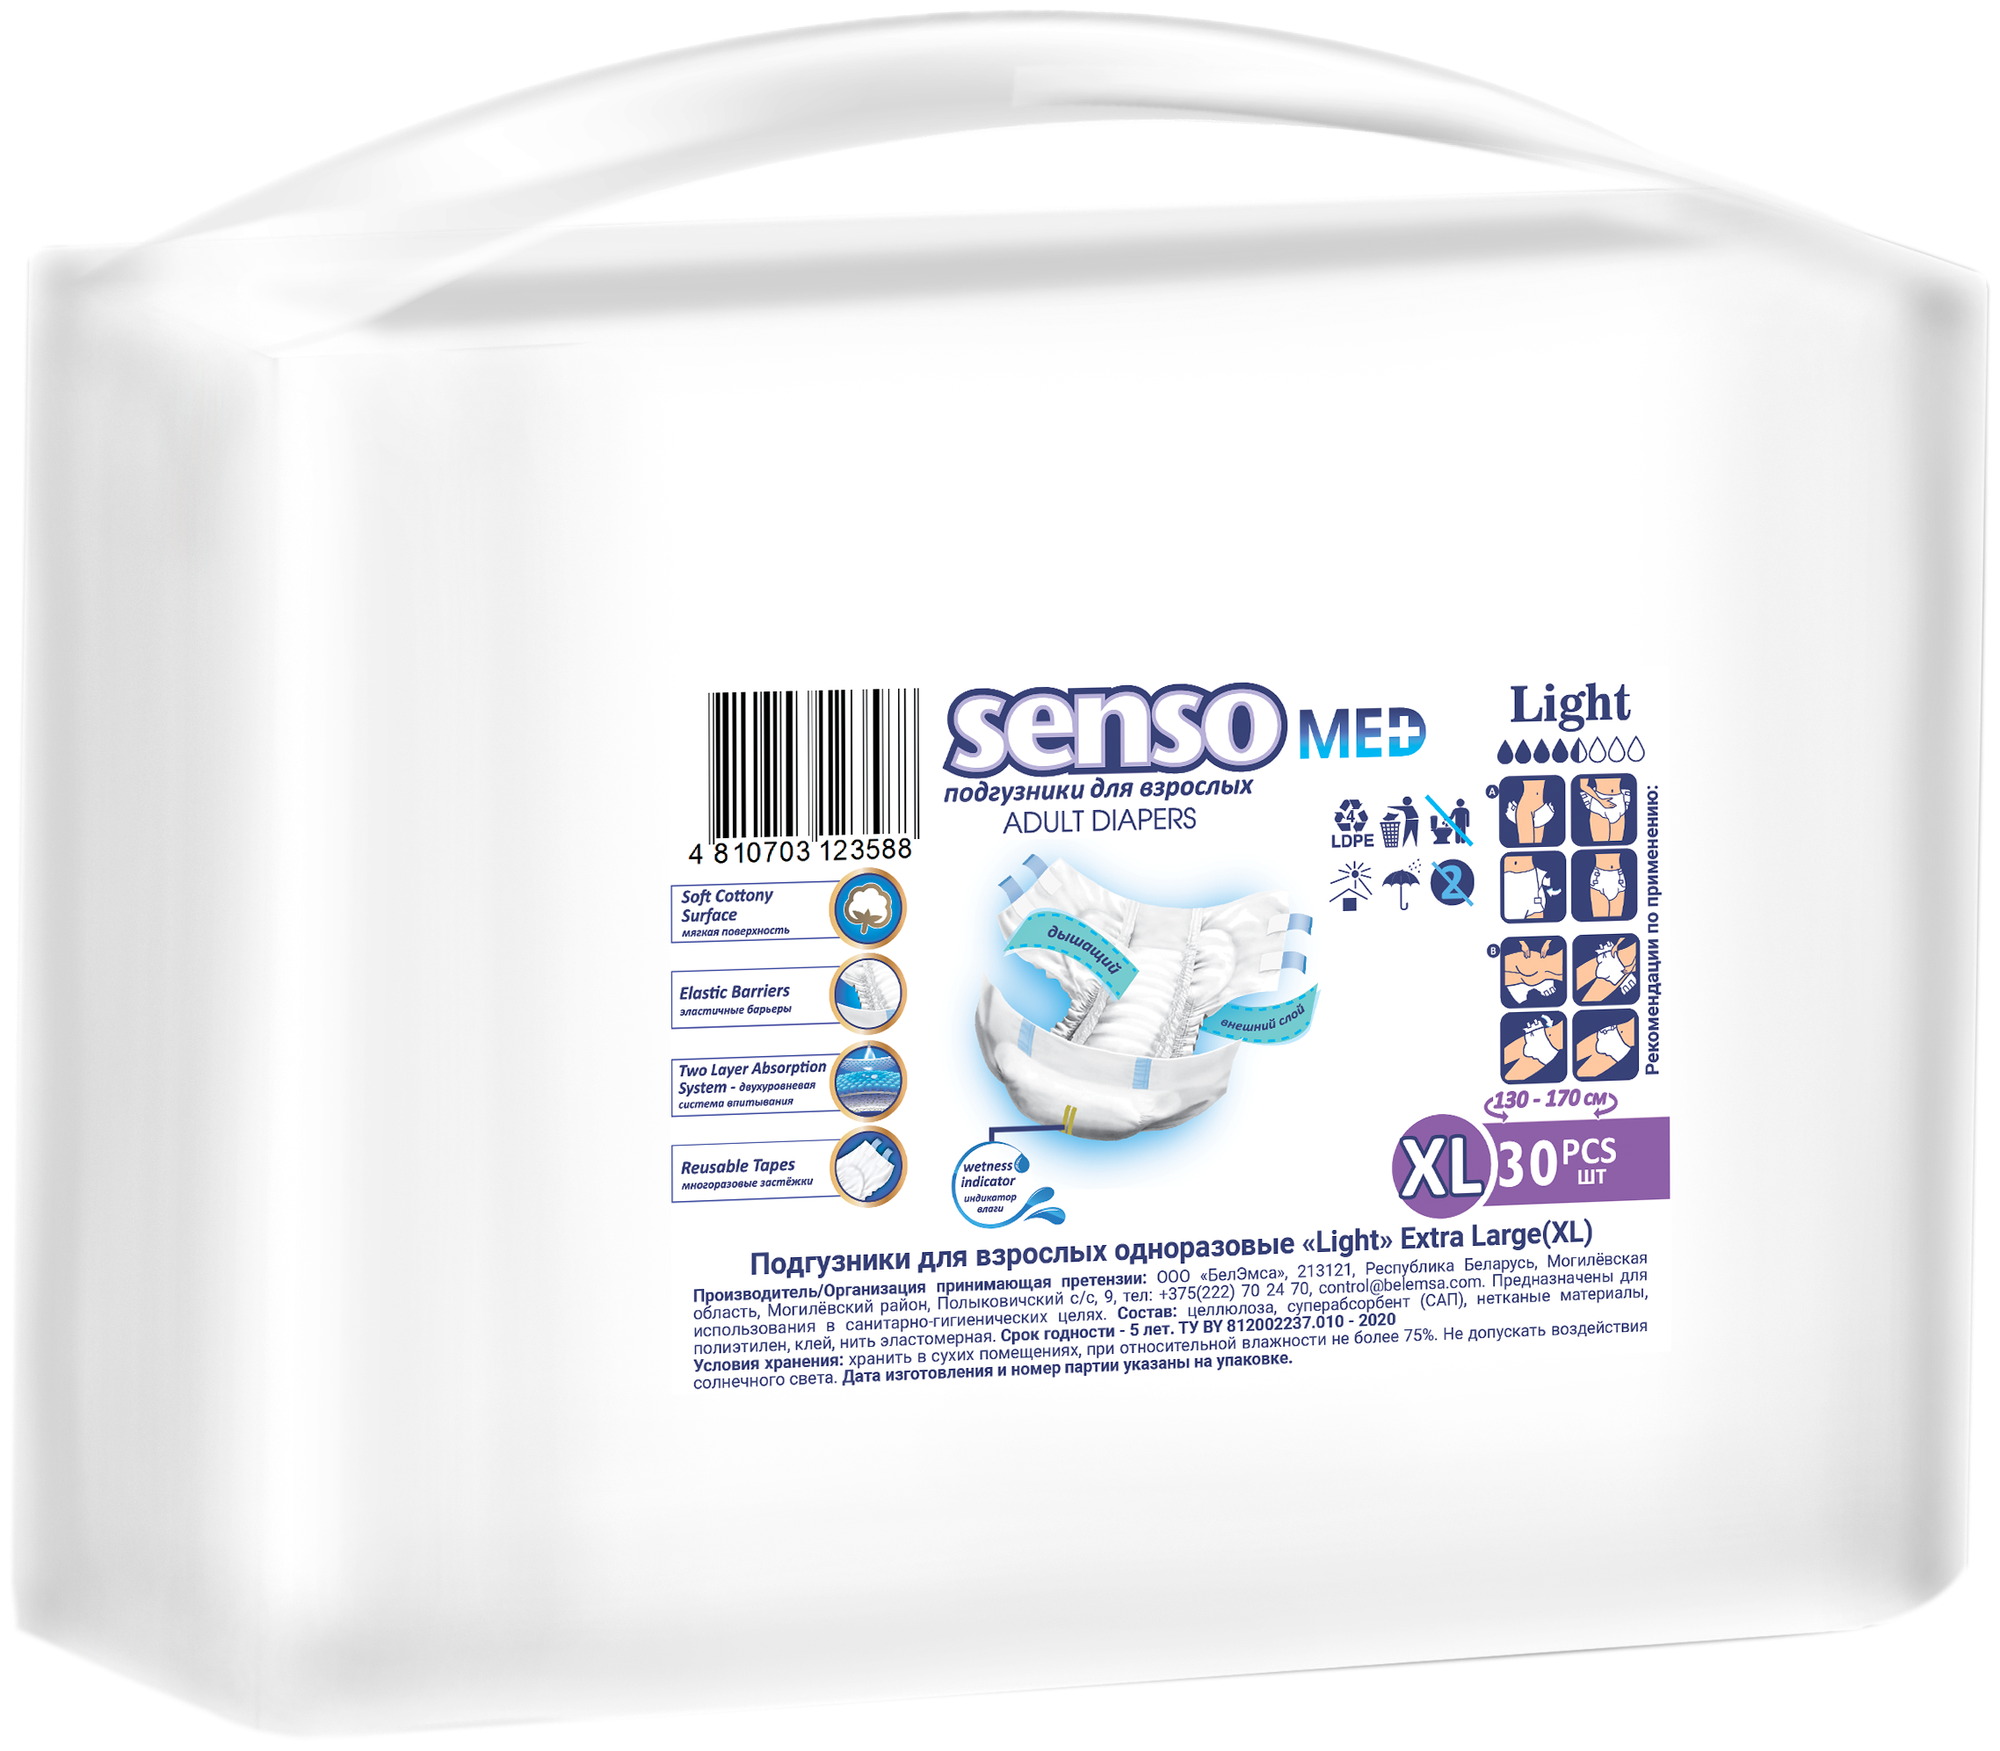 Подгузники для взрослых "Senso Med" Light XL (130-170) 30шт.